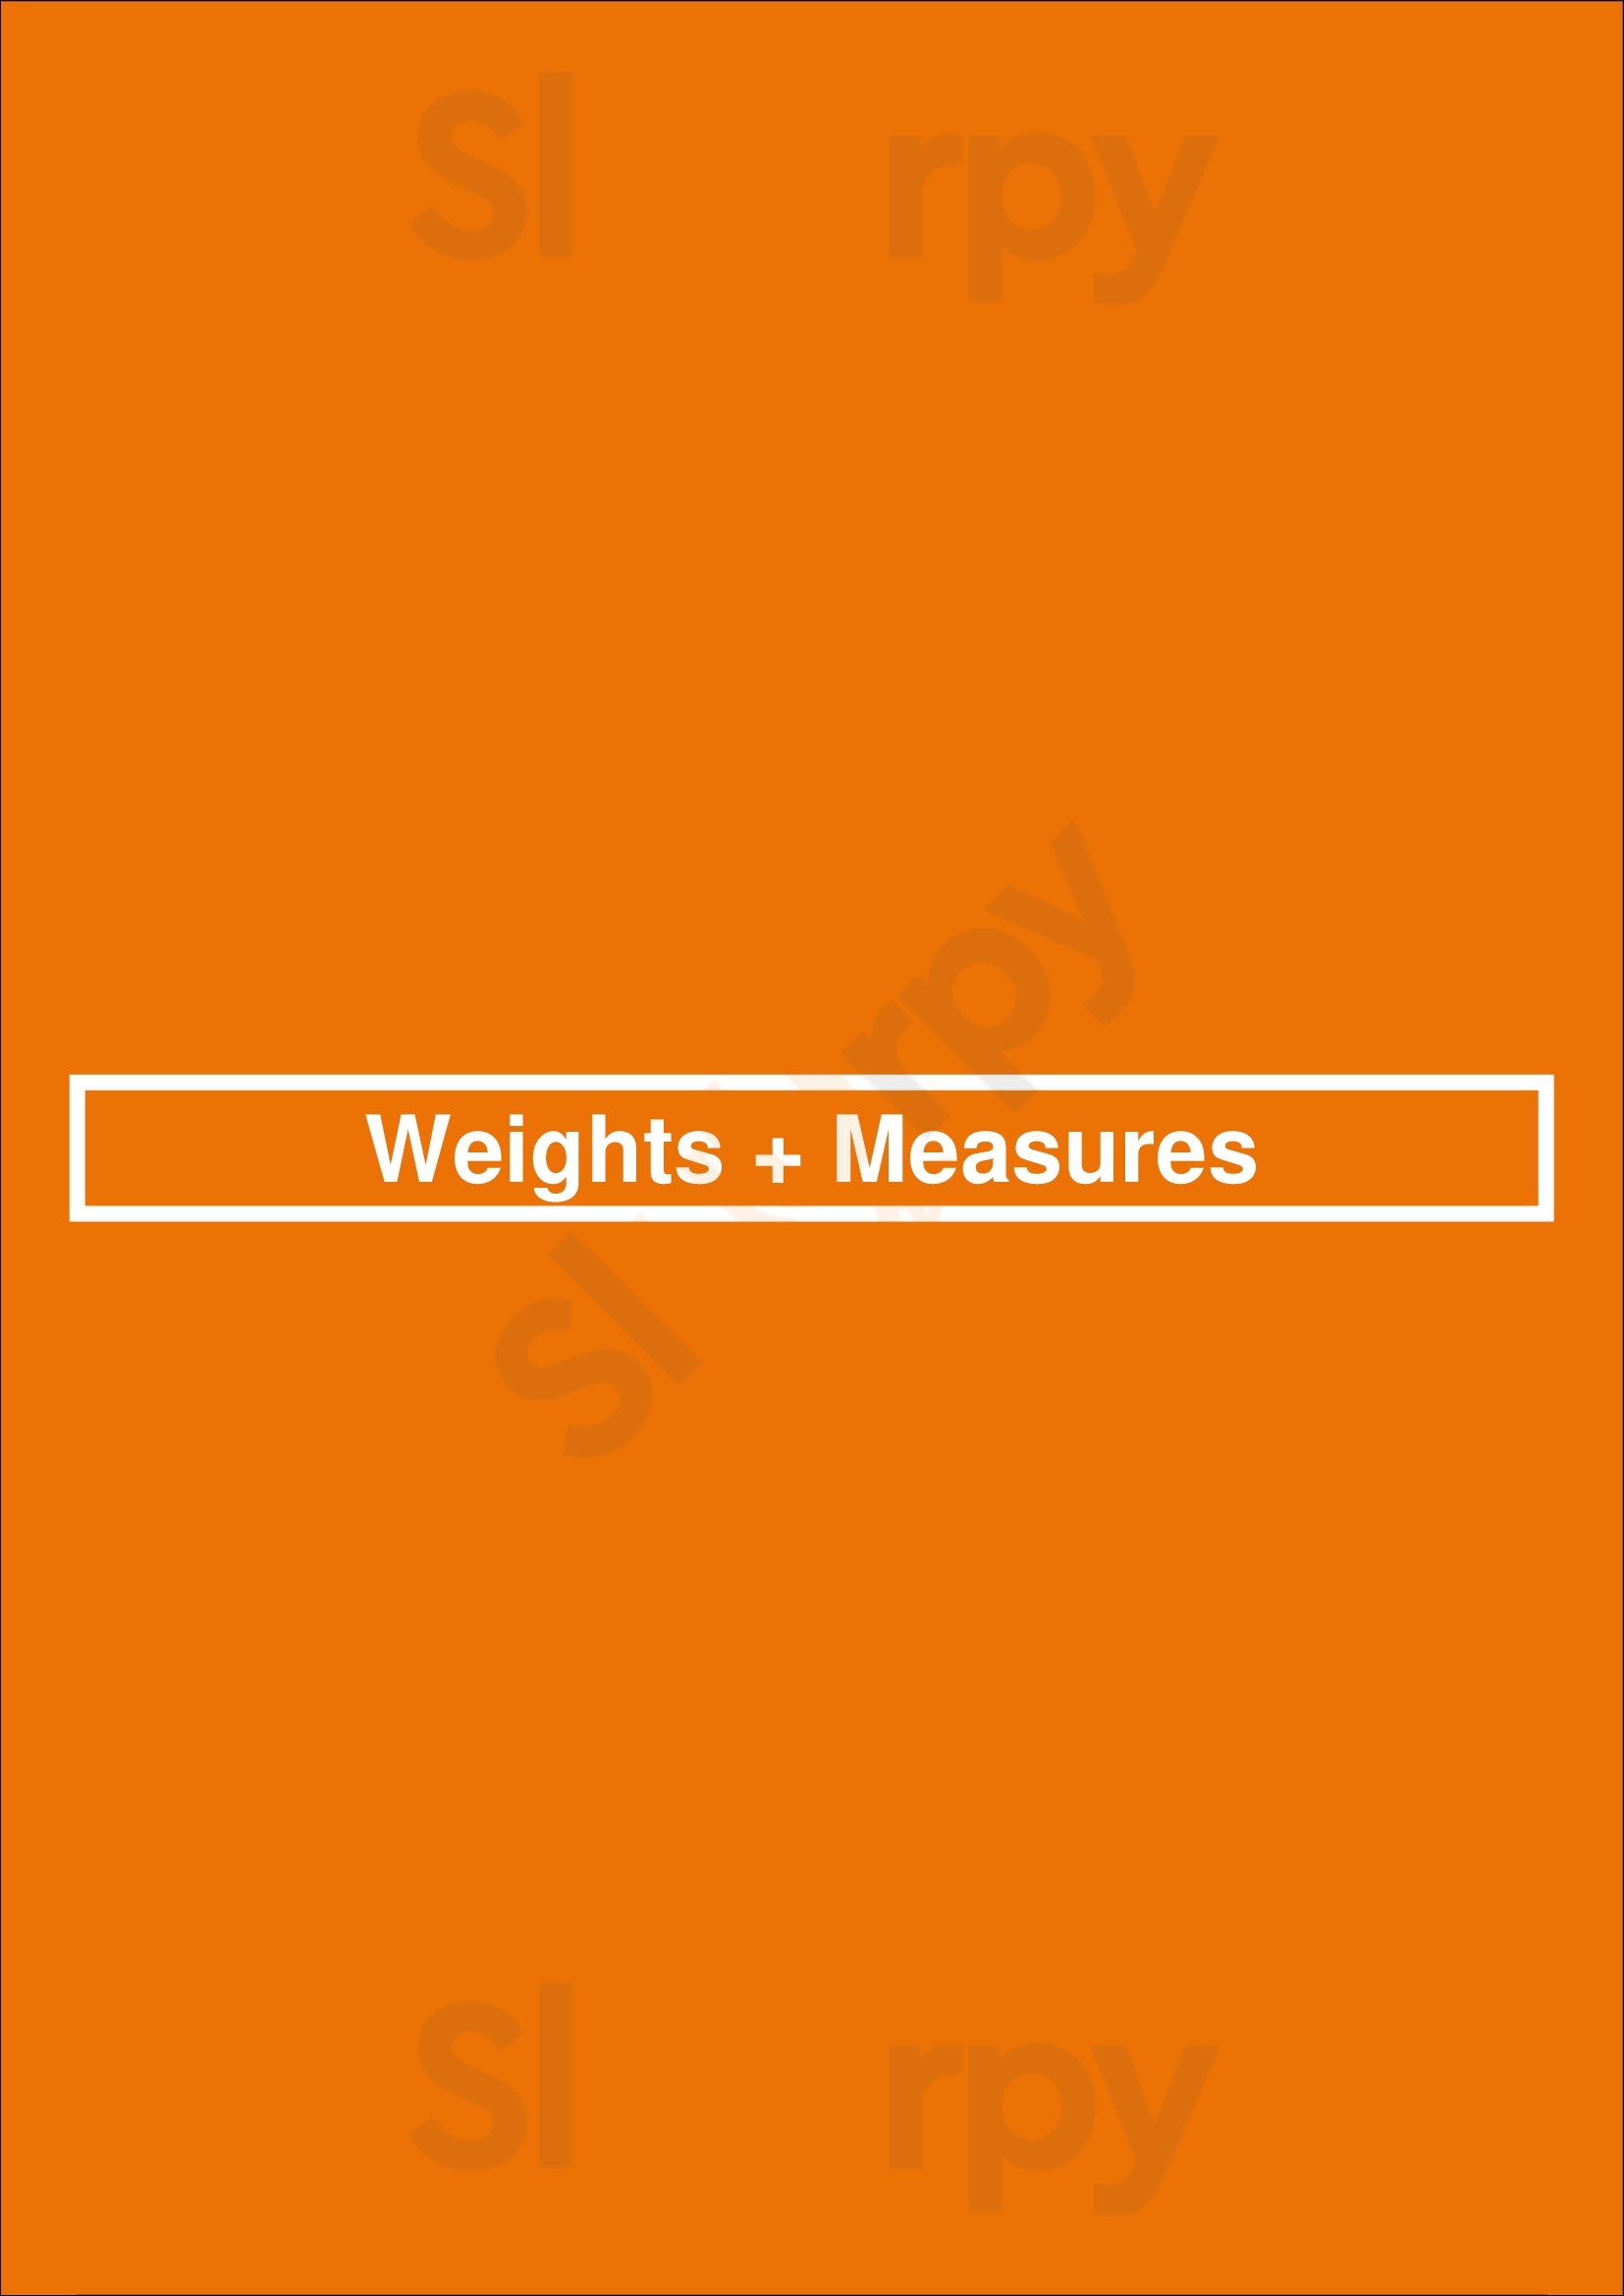 Weights + Measures Houston Menu - 1